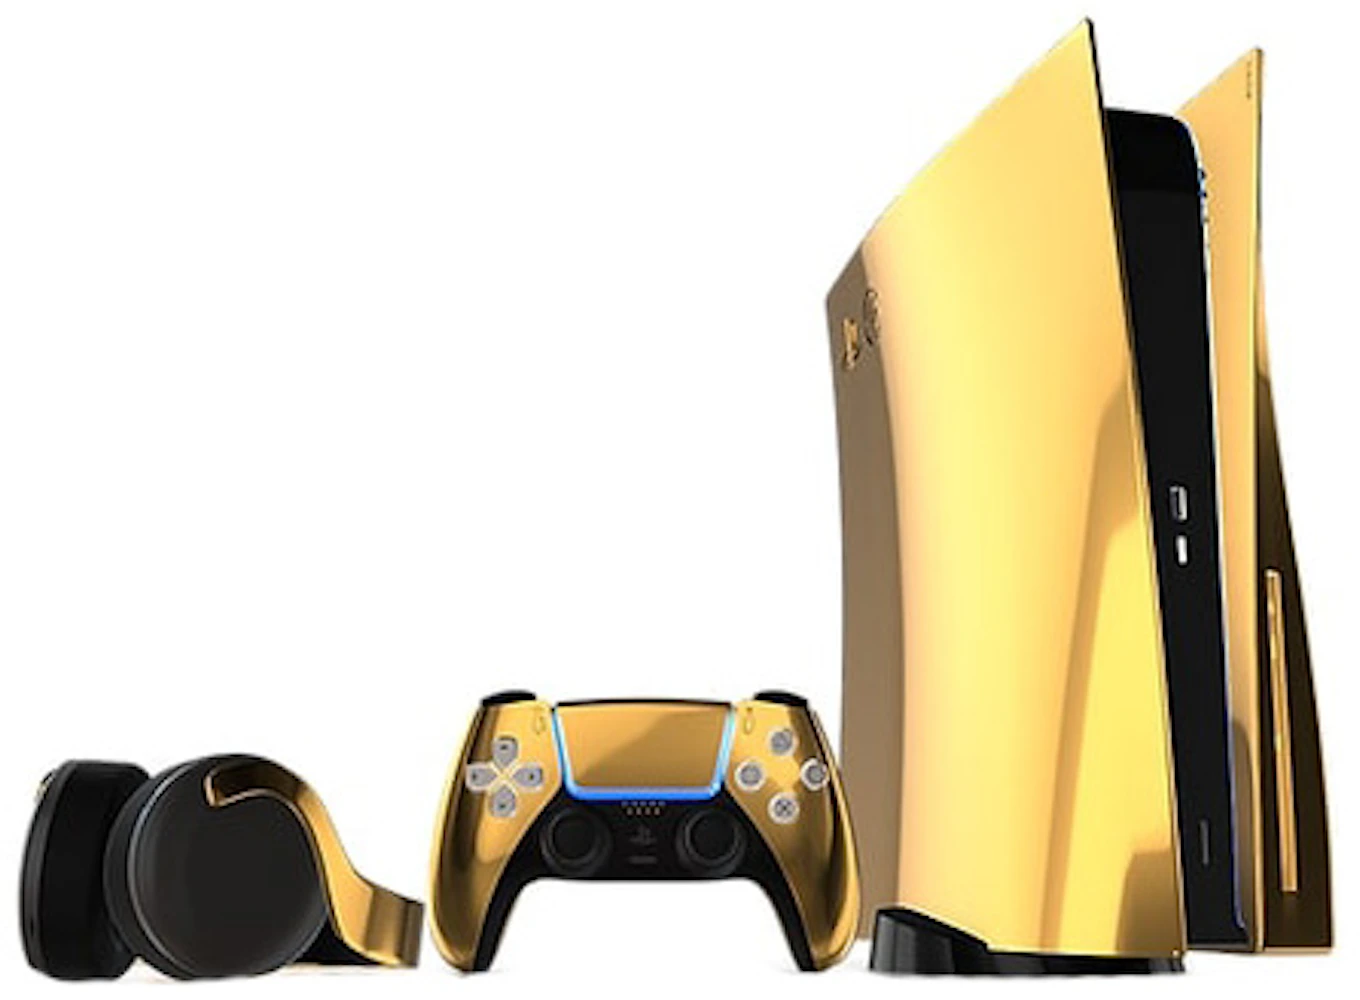 Sony PlayStation 5 Golden Rock edition made of 20 kgs 18-karat